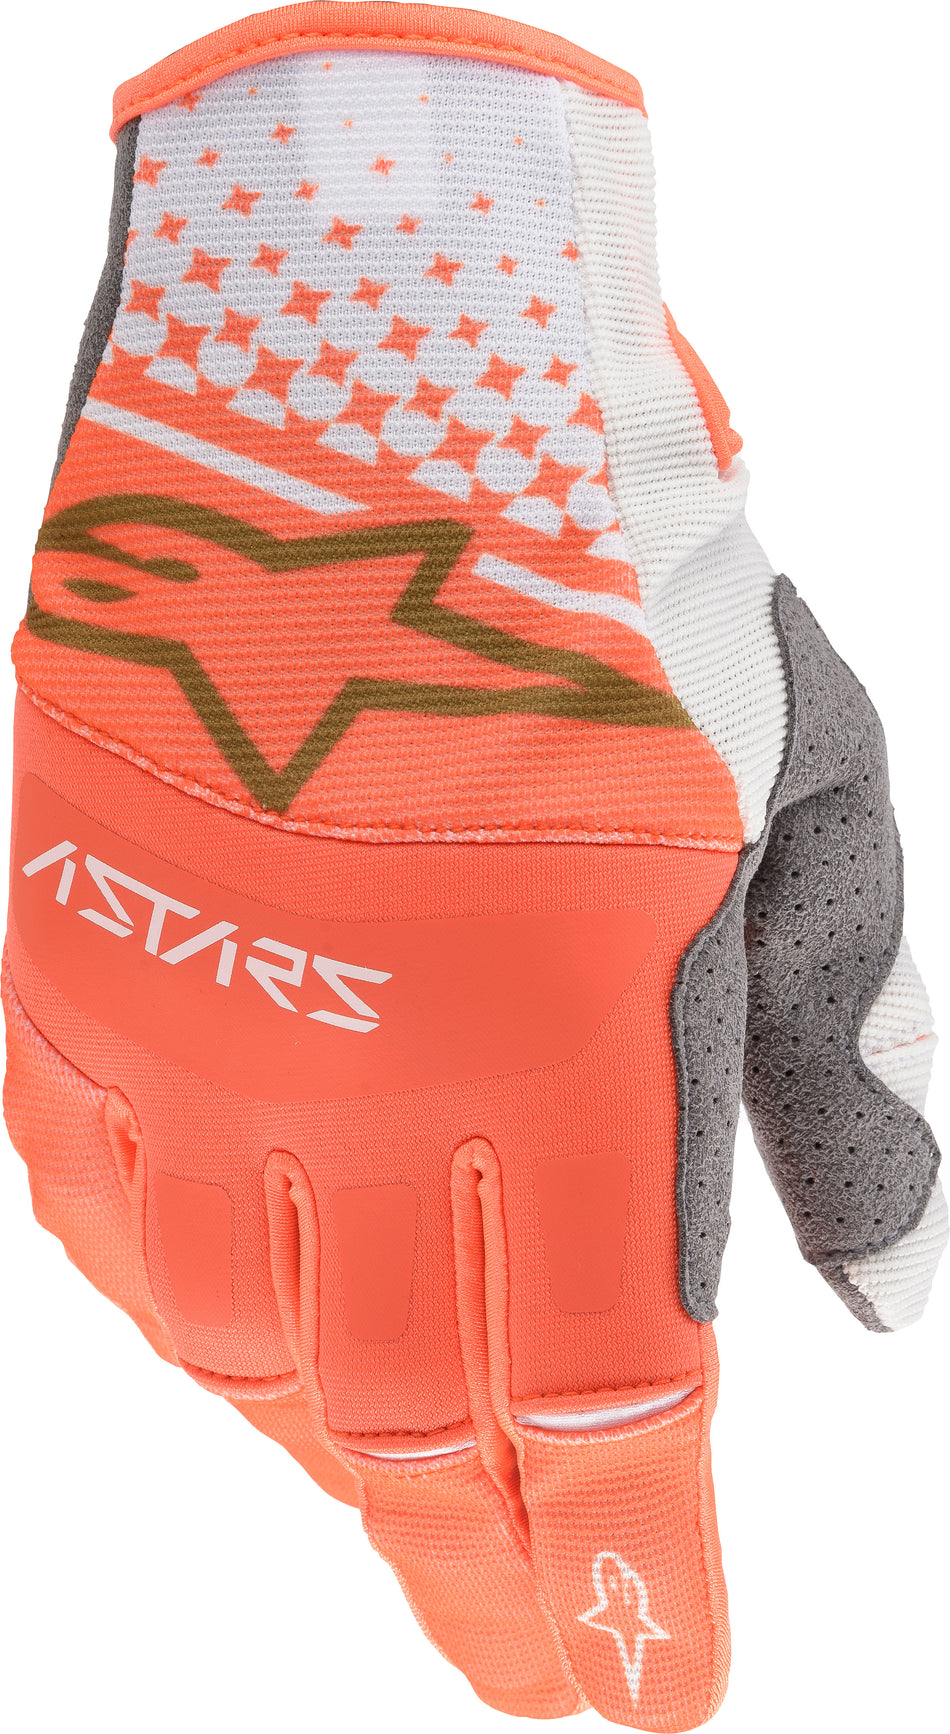 ALPINESTARS Techstar Gloves White/Orange/Gold Lg 3561020-2459-L